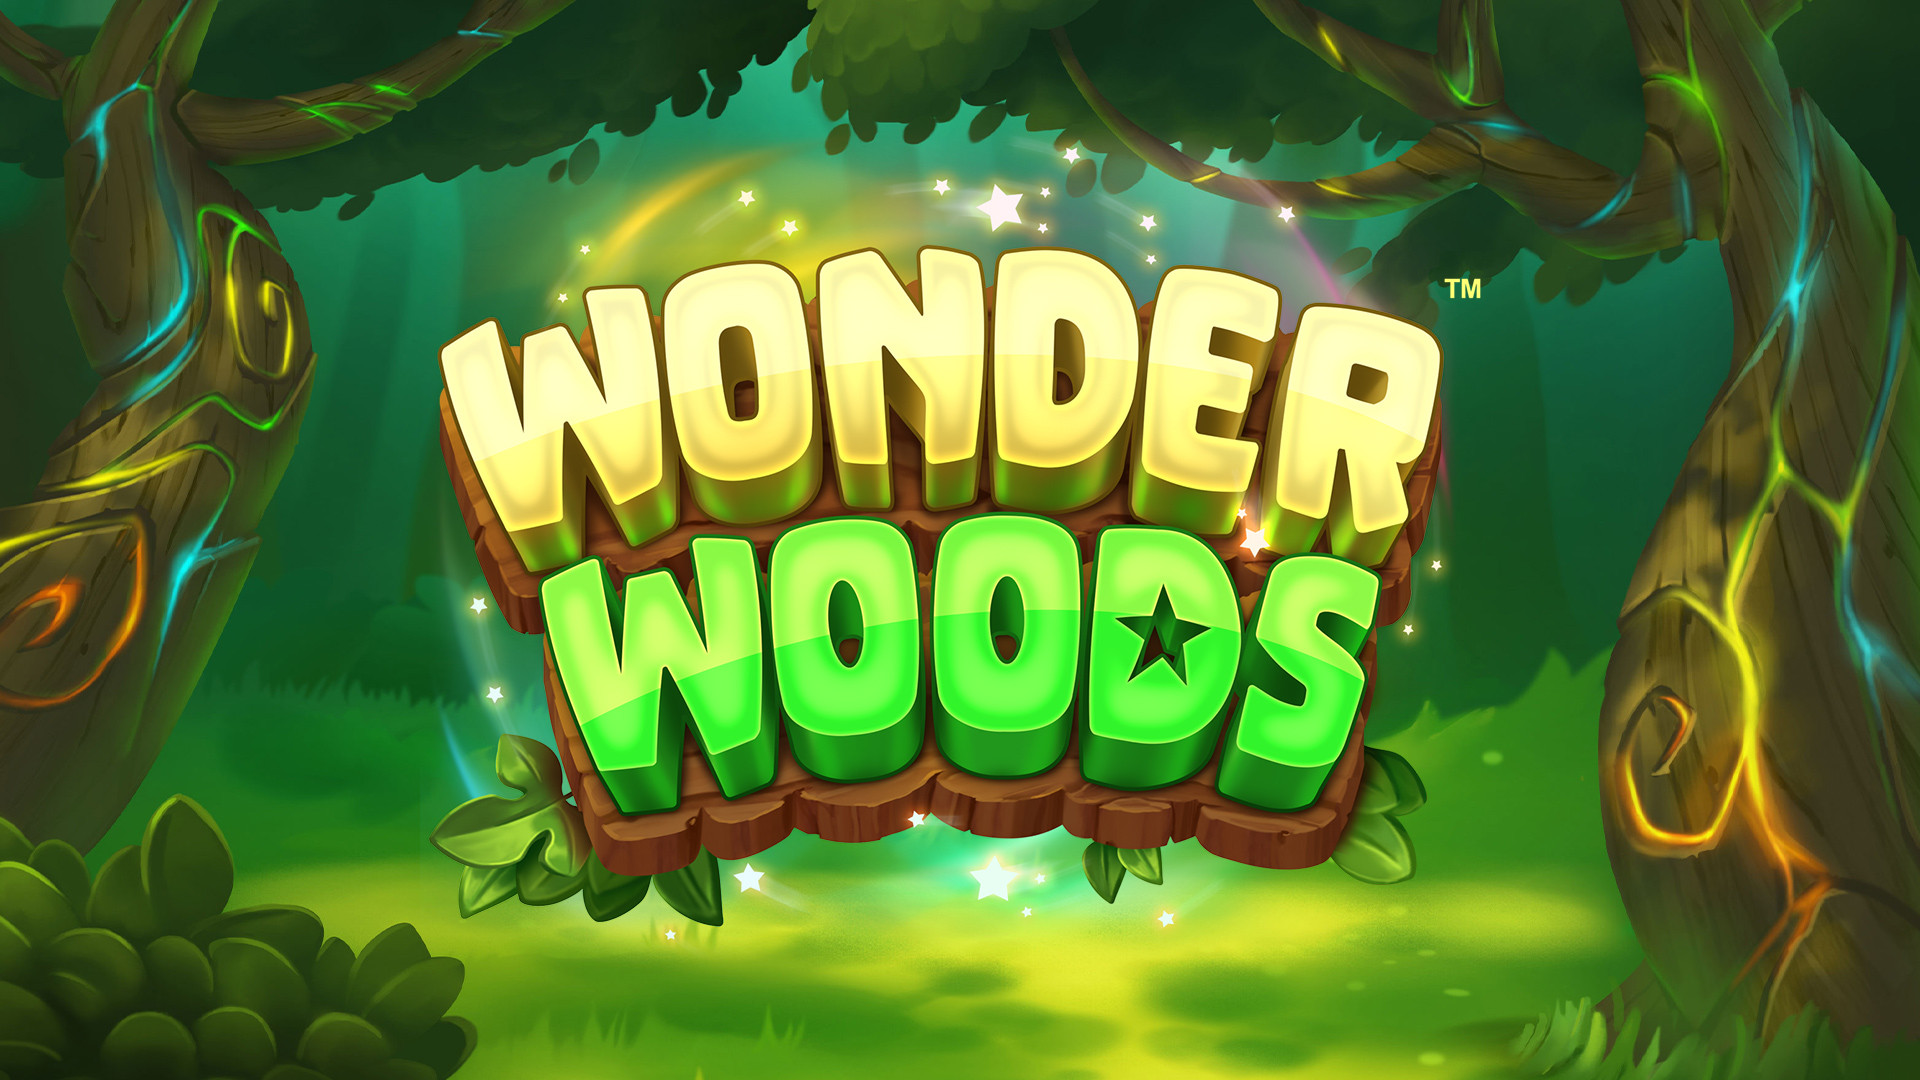 Wonder Woods